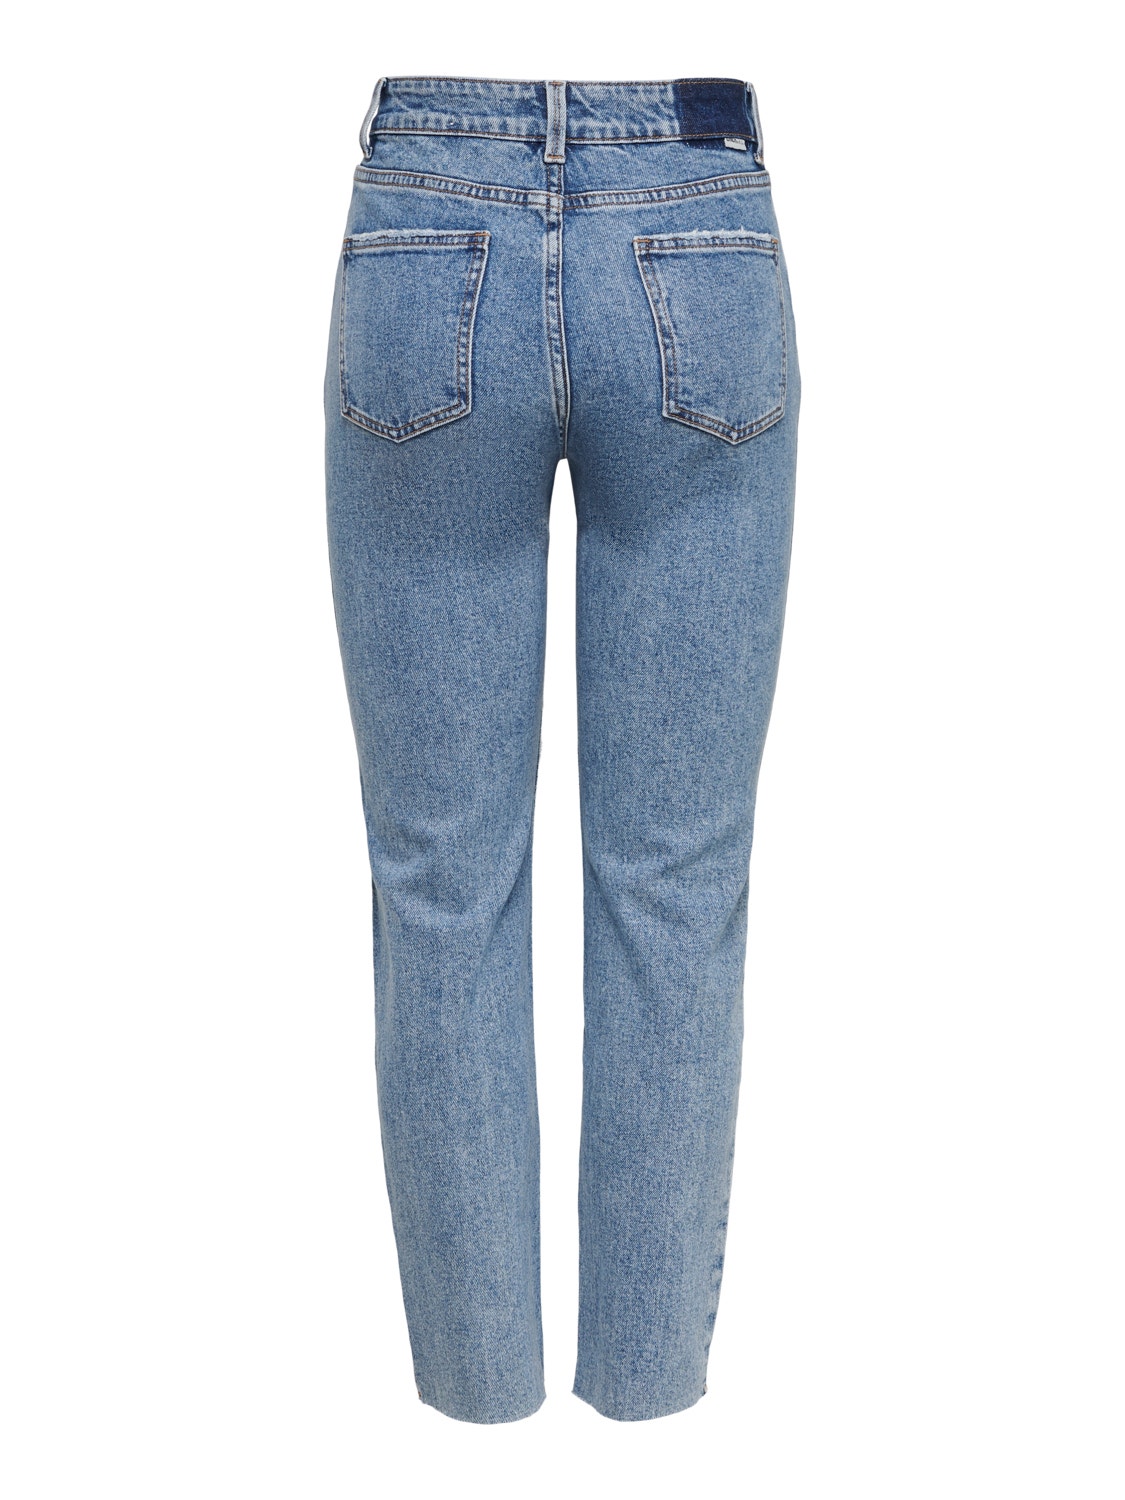 ONLY Straight Fit High waist Cut-off hems Jeans -Light Blue Denim - 15229737